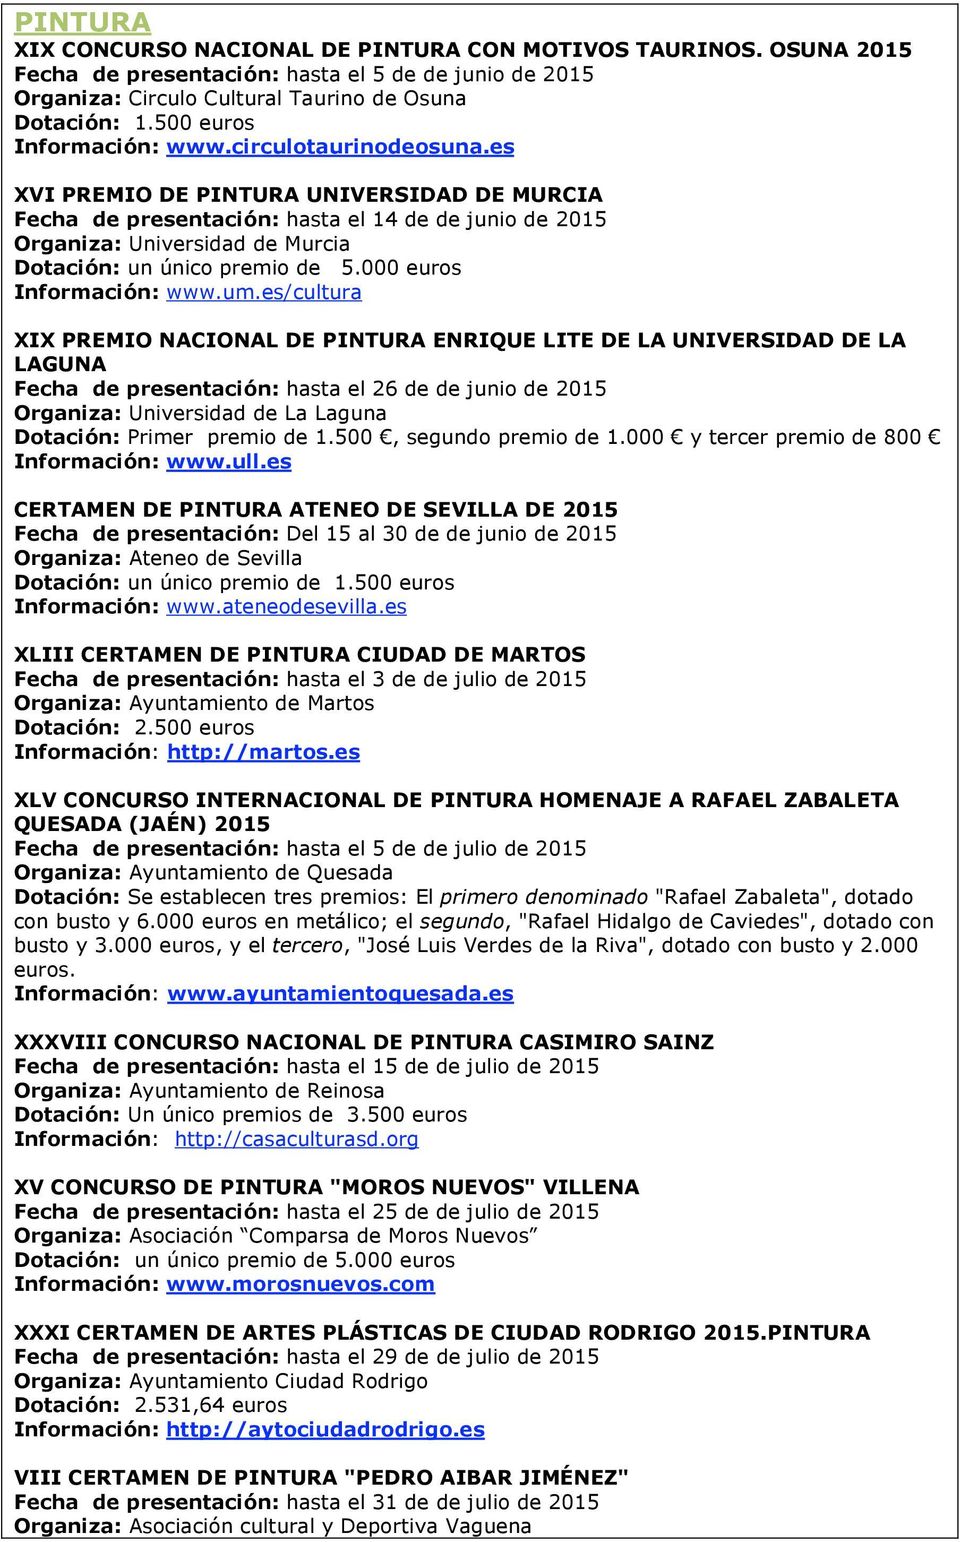 es XVI PREMIO DE PINTURA UNIVERSIDAD DE MURCIA Fecha de presentación: hasta el 14 de de junio de 2015 Organiza: Universidad de Murcia Dotación: un único premio de 5.000 euros Información: www.um.